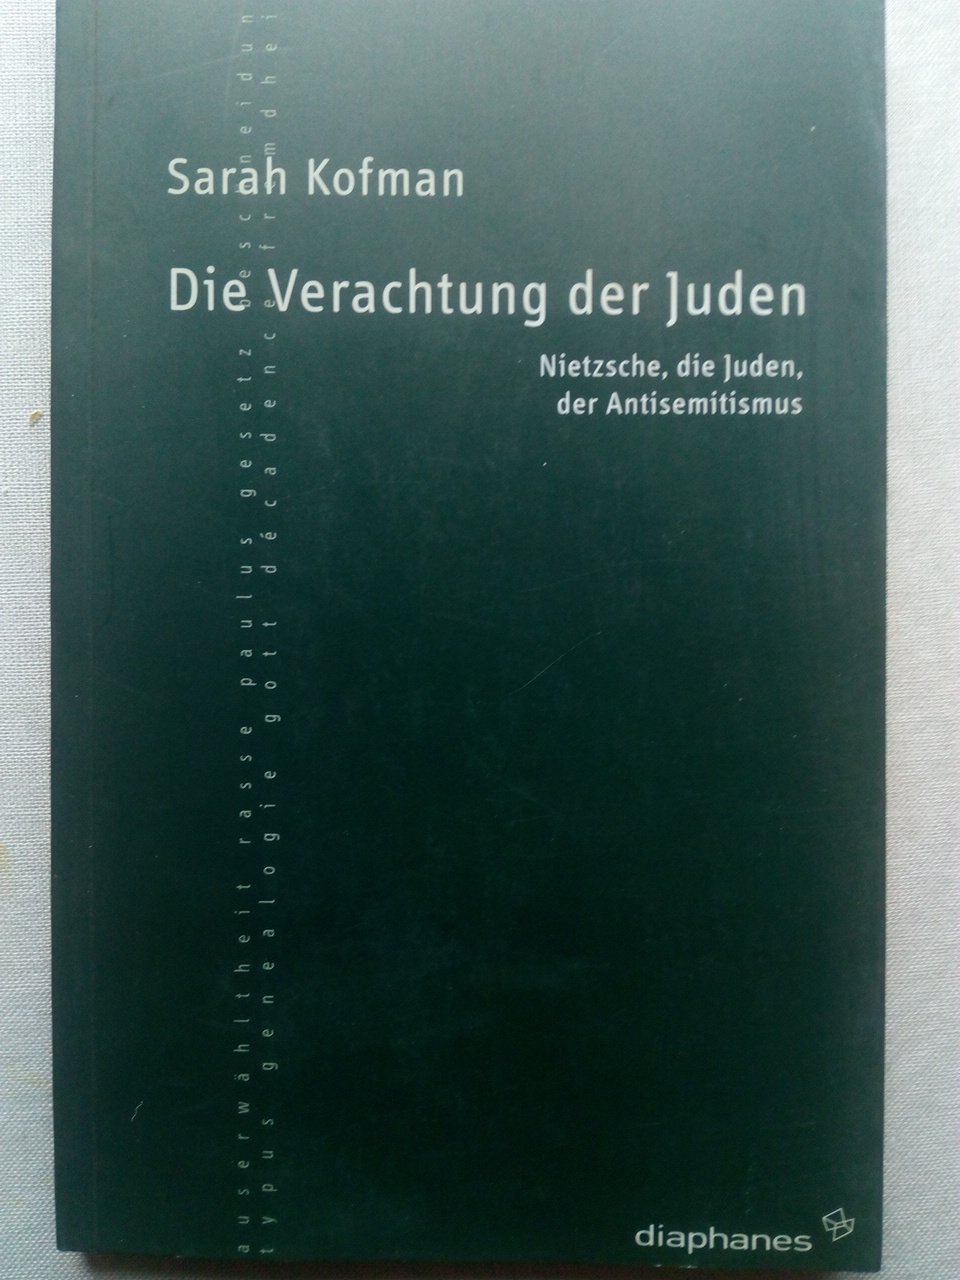 Die Verachtung der Juden - Nietzsche, die Juden, der Antisemitismus - Kofman, Sarah